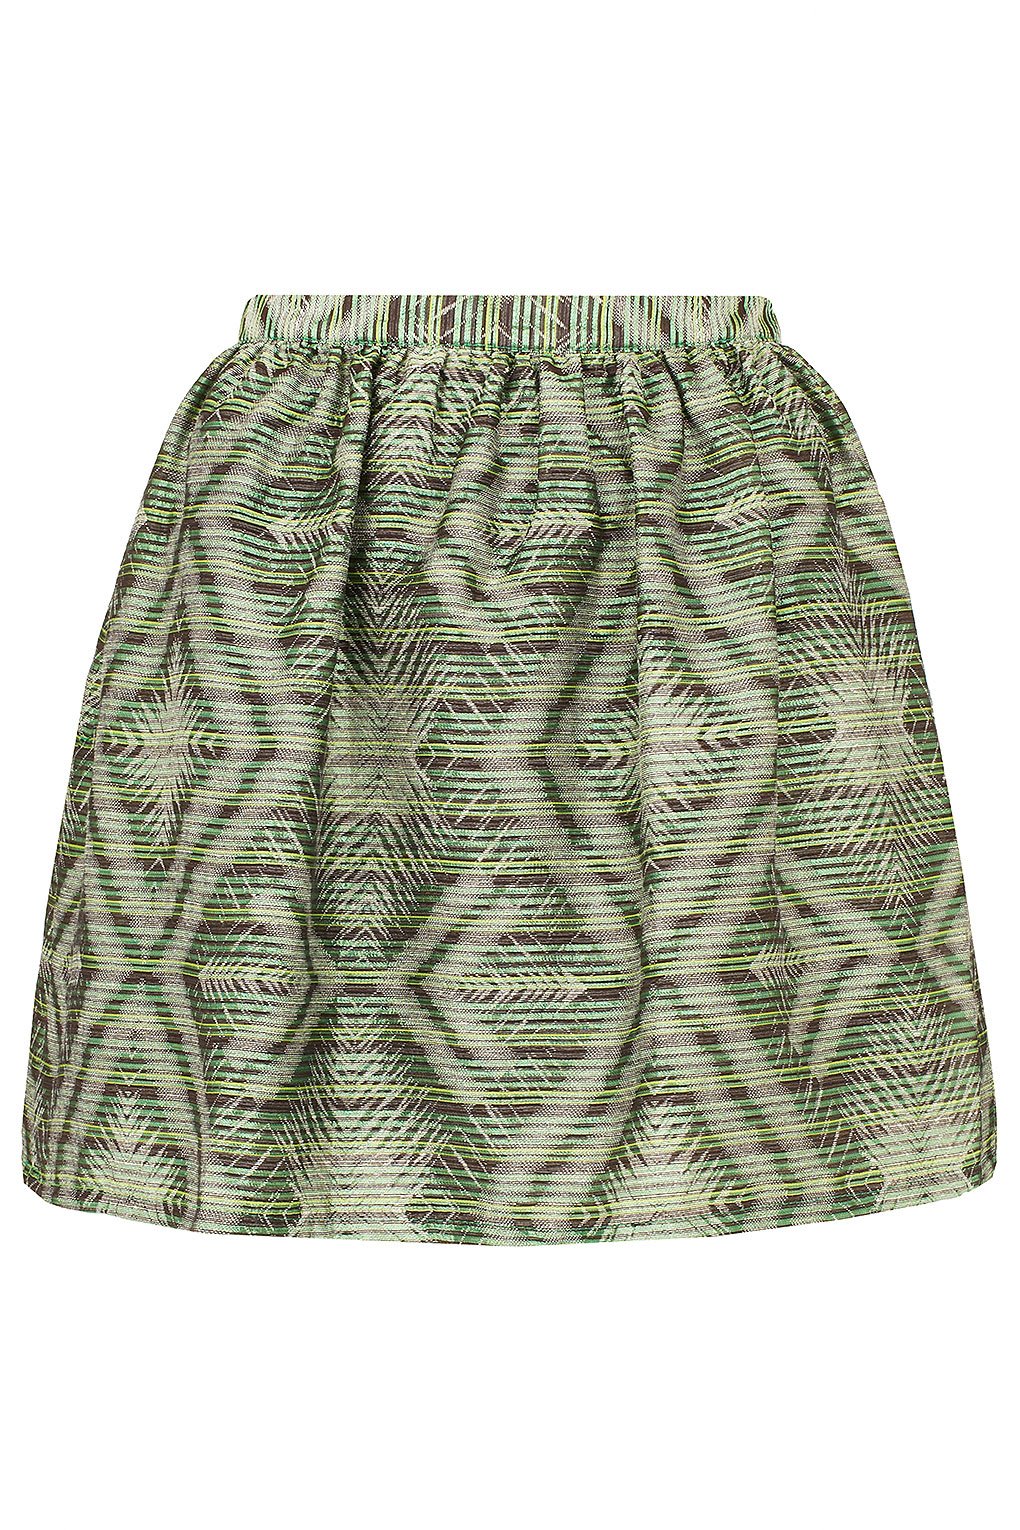 Topshop Green Aztec Print Full Skirt.jpg